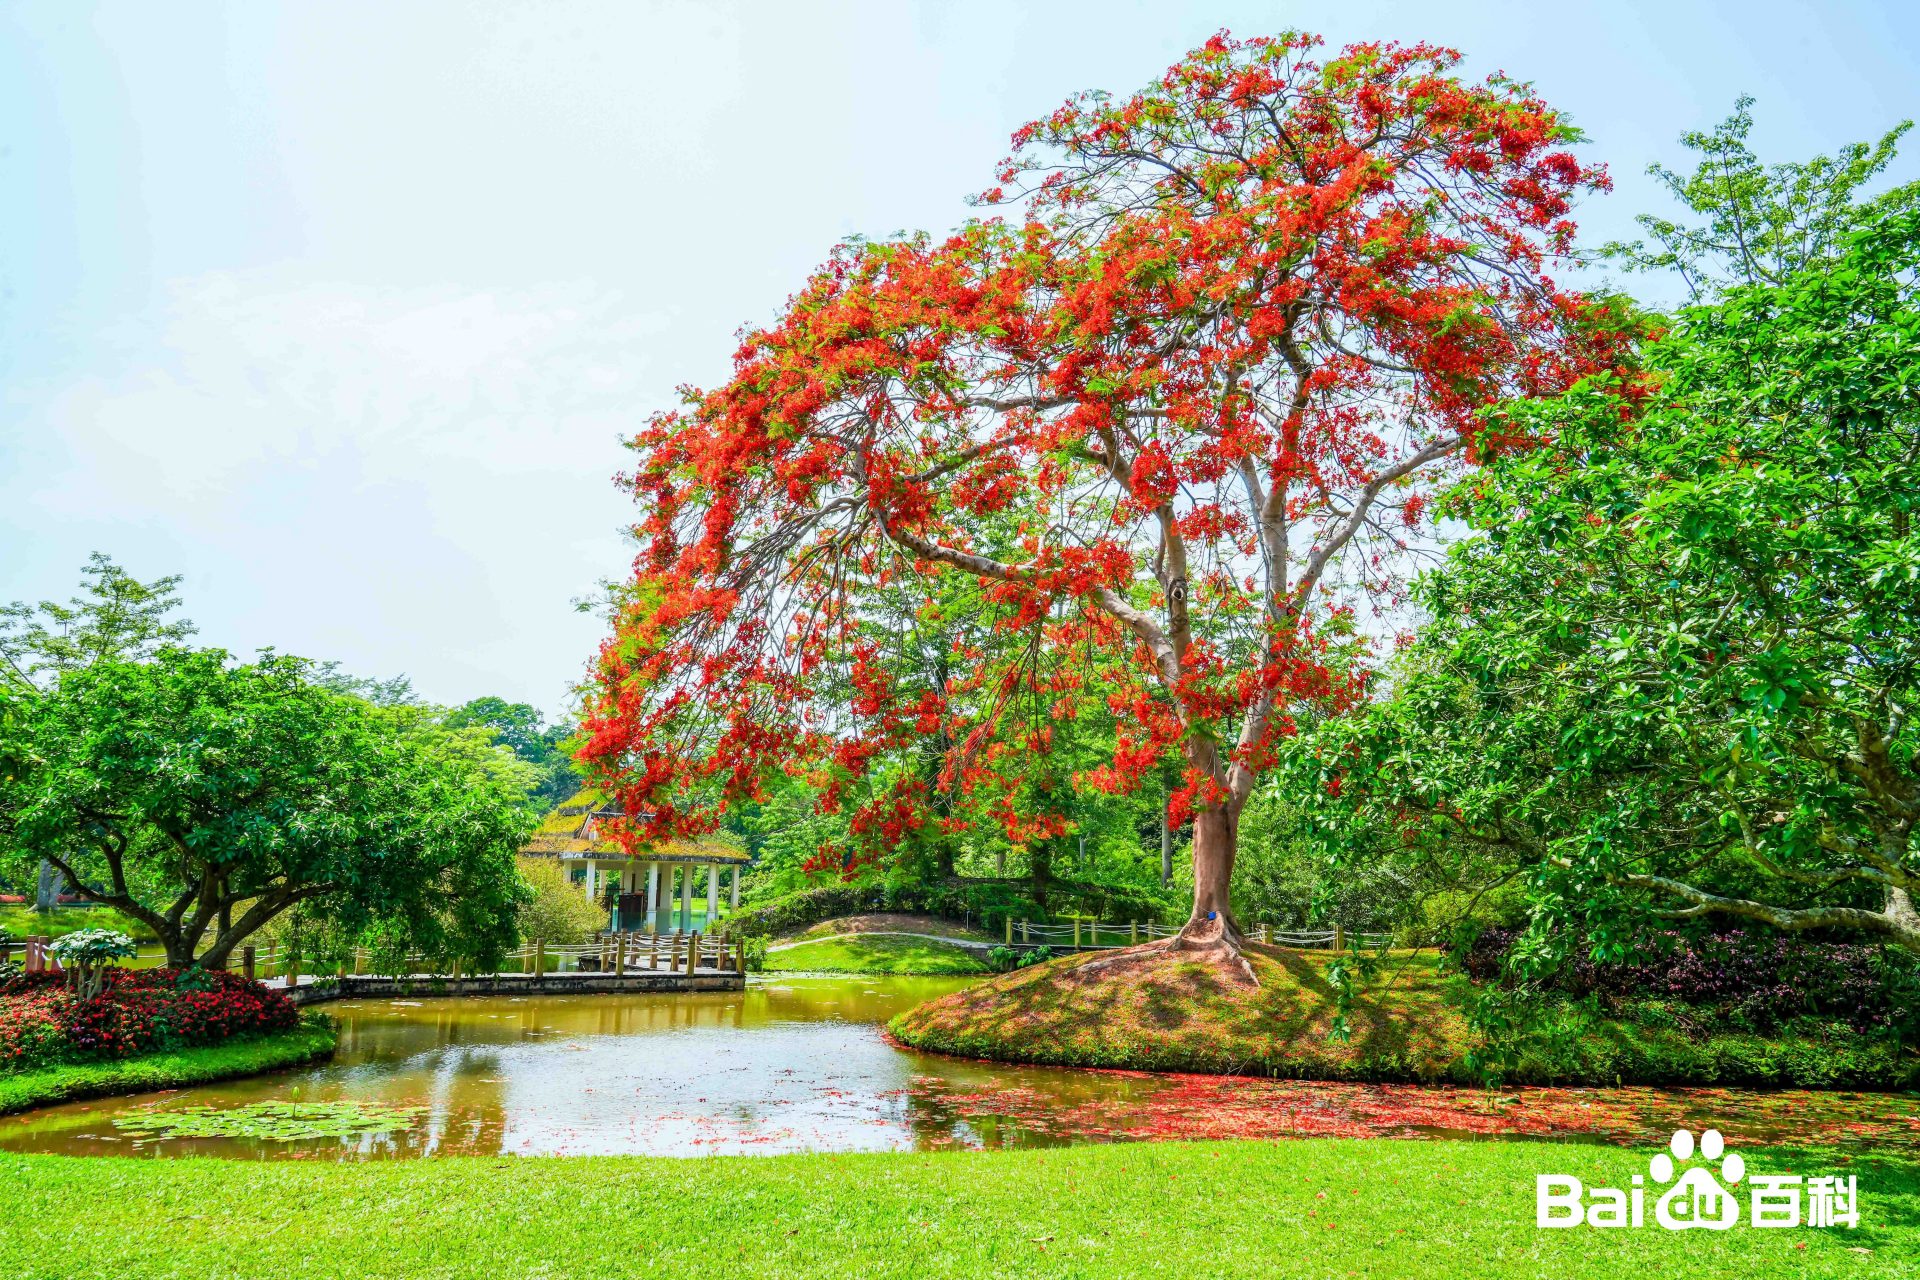 西双版纳中科院植物园在勐腊县勐仑镇,是我国最大保存物种最多的植物